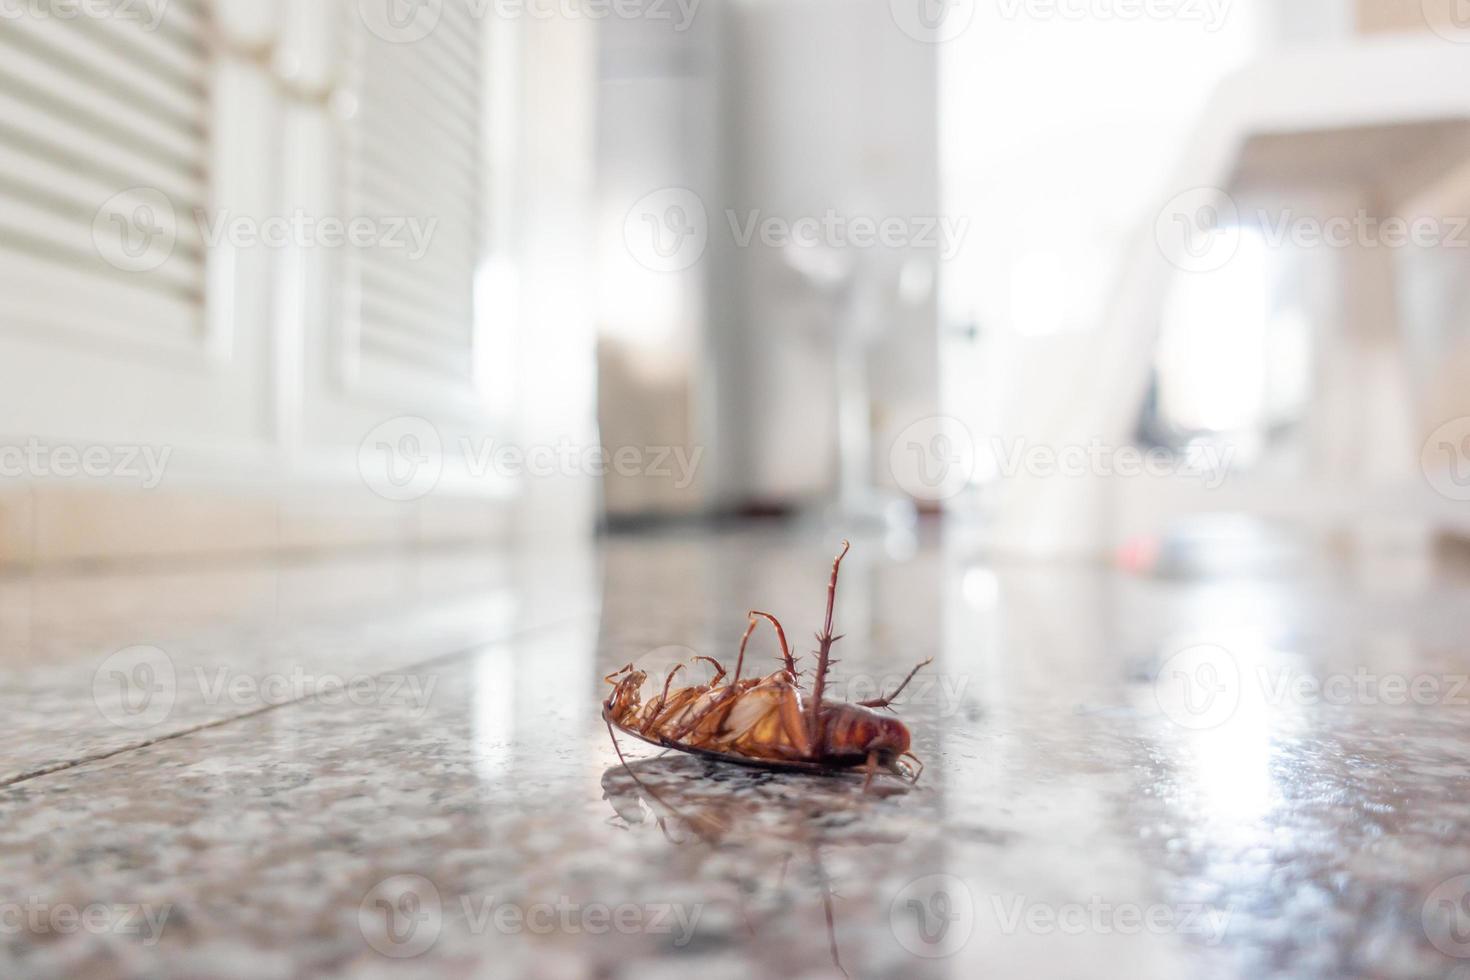 scarafaggio morto sul pavimento foto